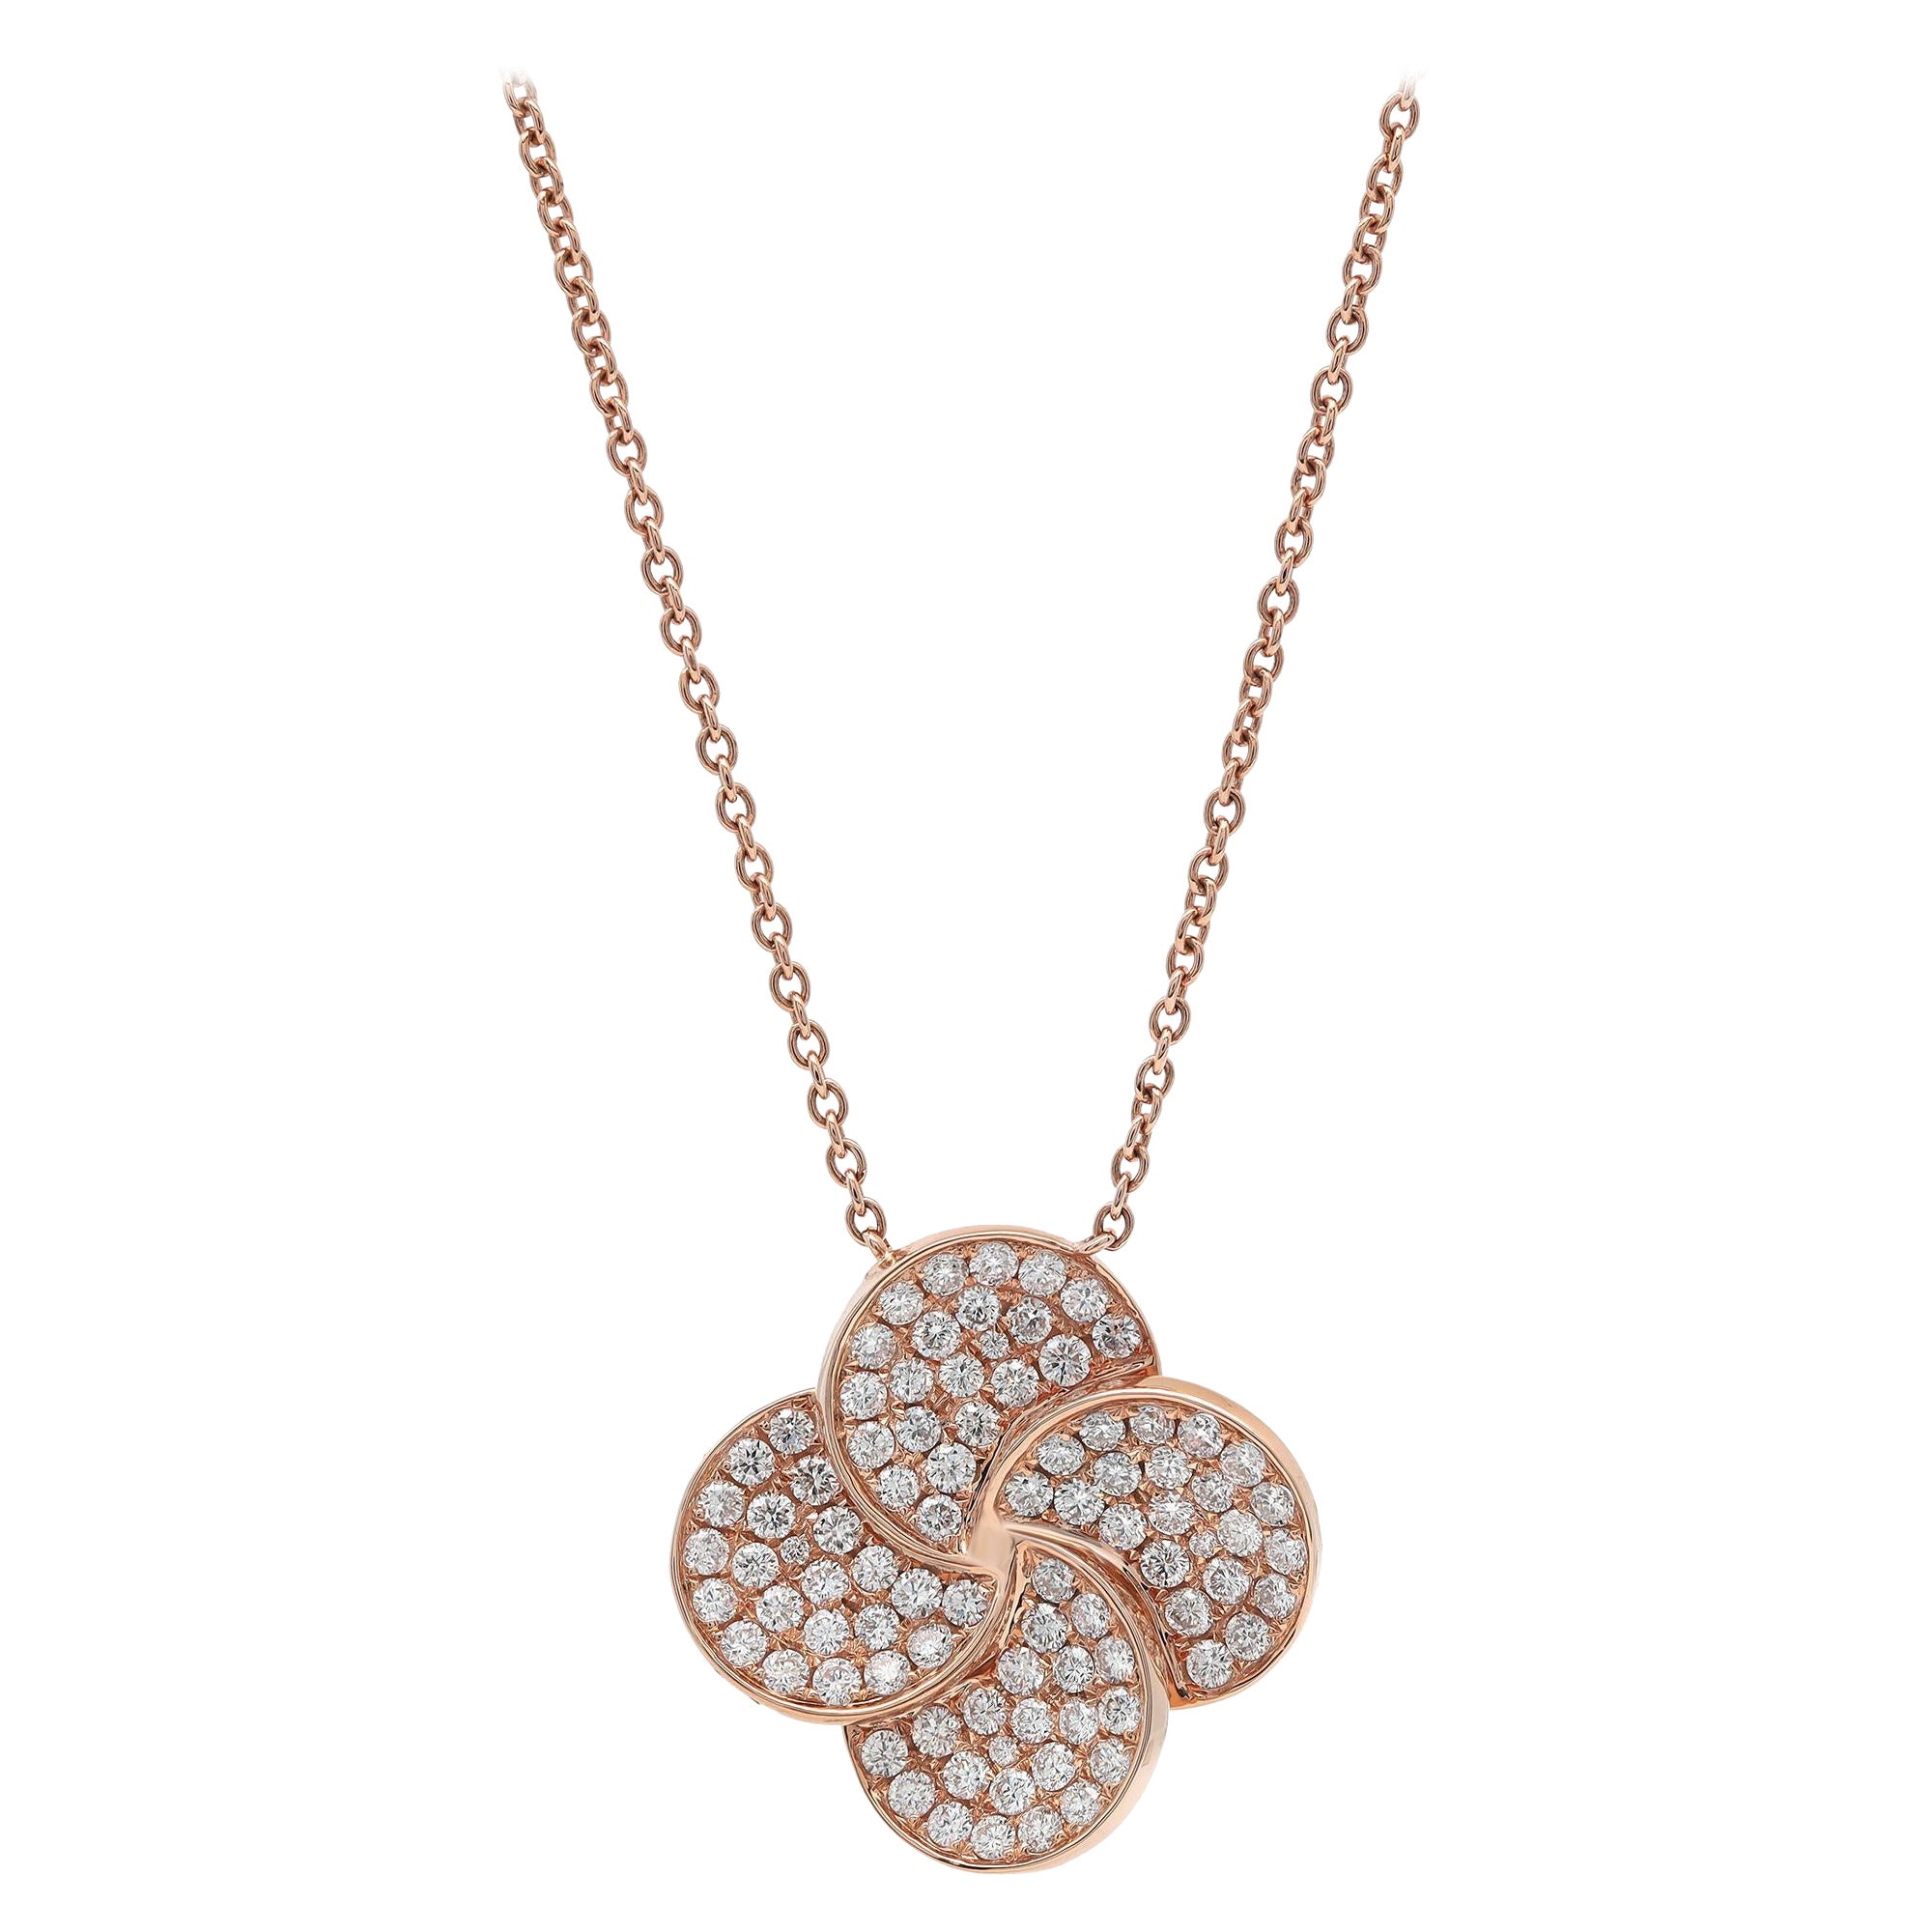 1.77Cttw Pave Set Round Cut Diamond Flower Pendant Necklace 18K Rose Gold